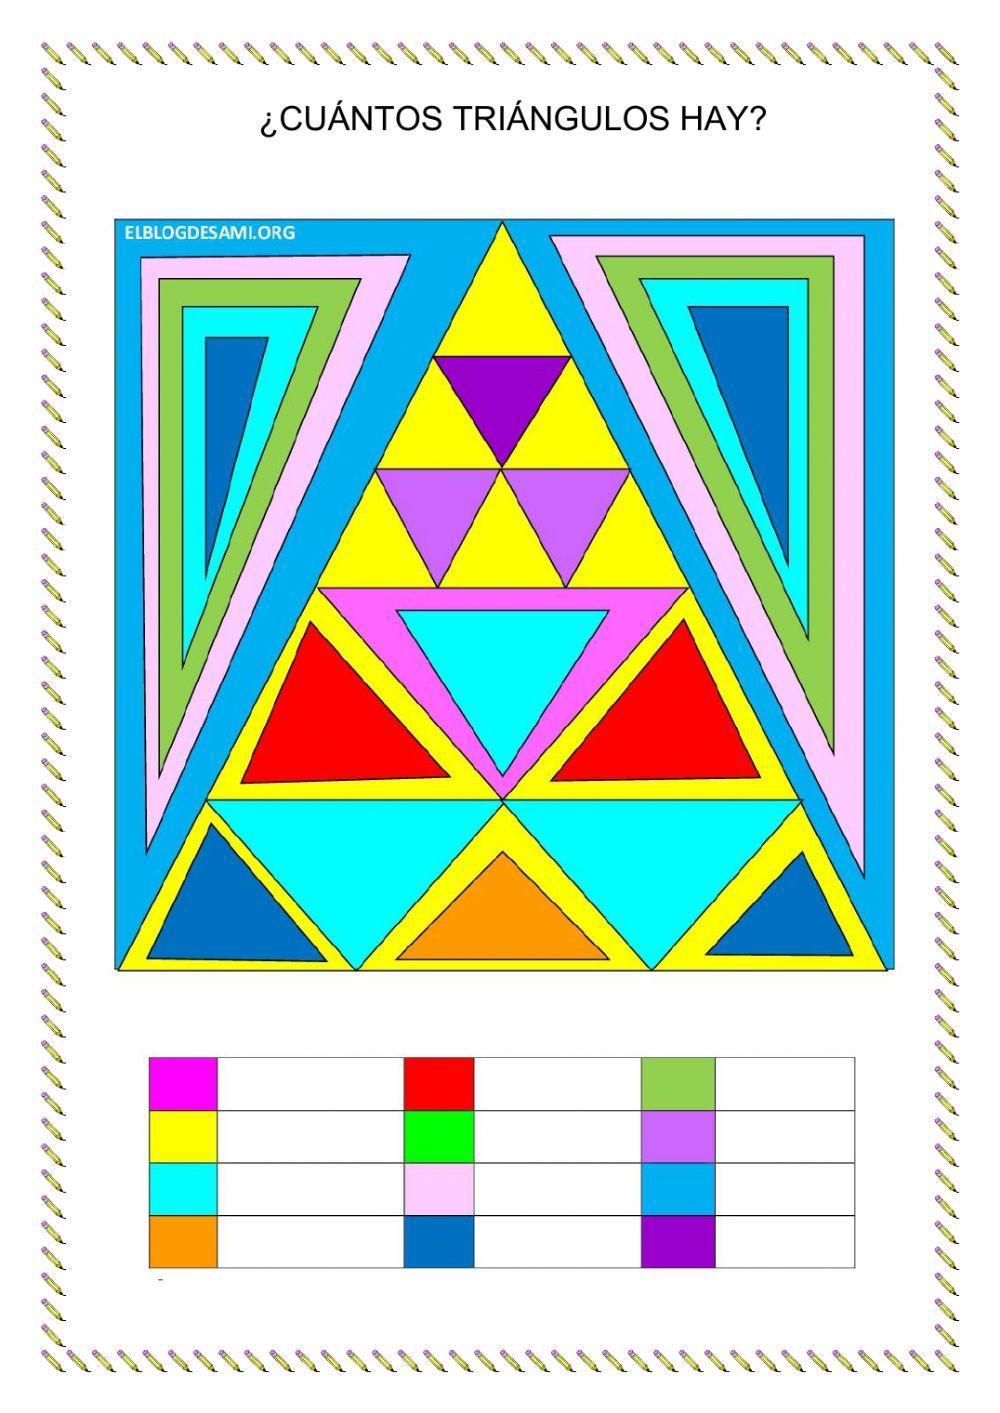 ¿Cuántos triángulos hay?